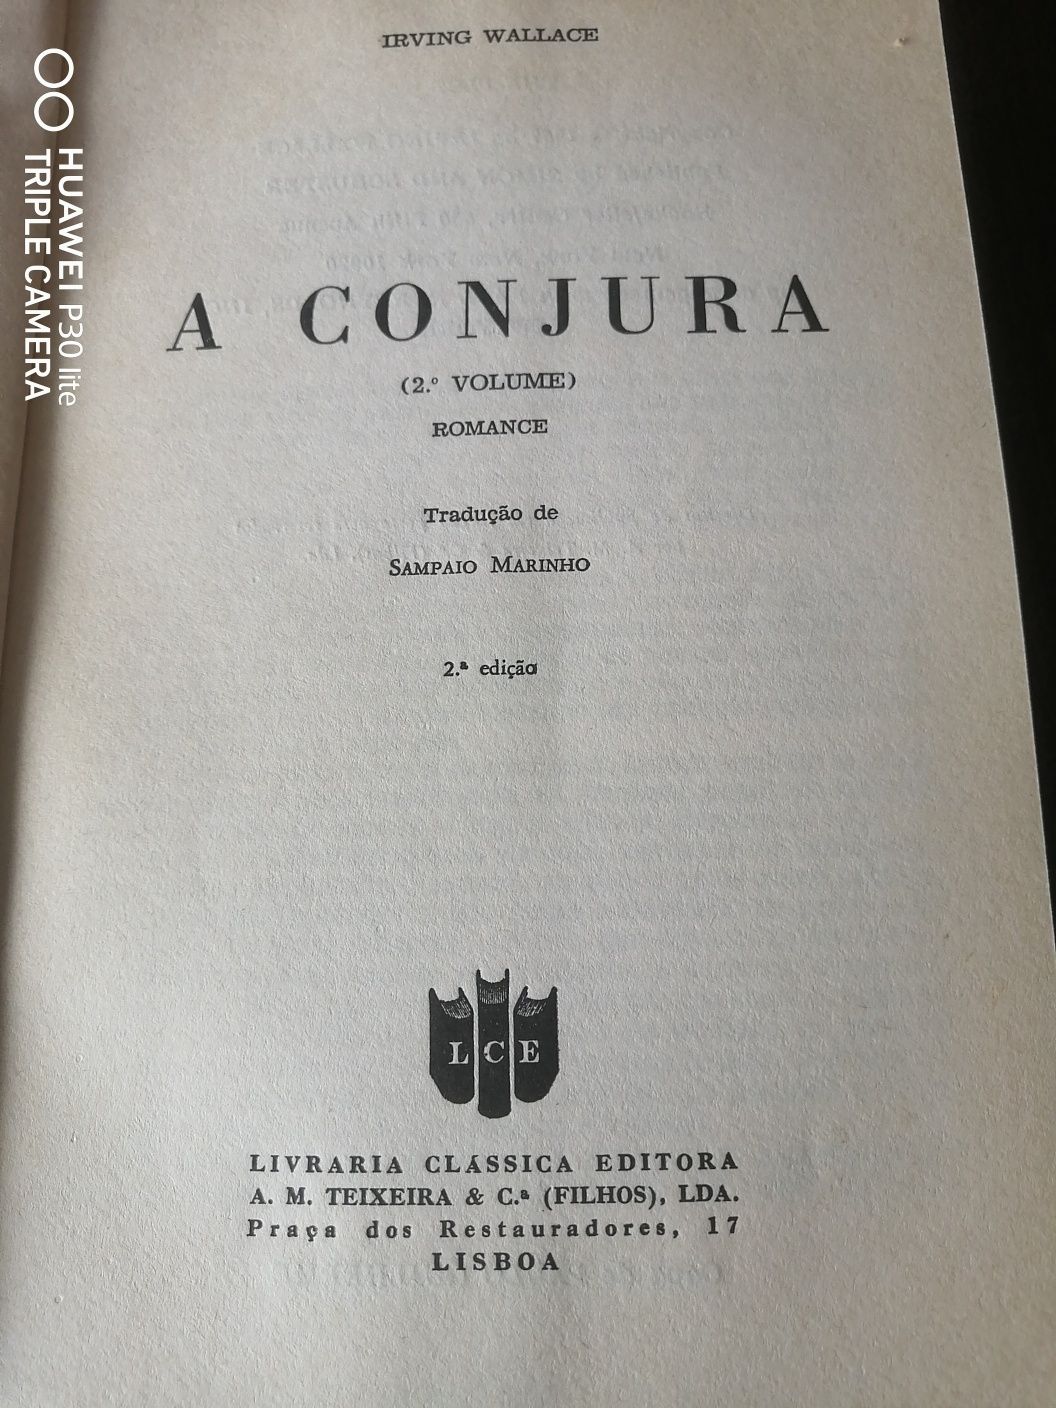 Livros "A Conjura" volume I e II